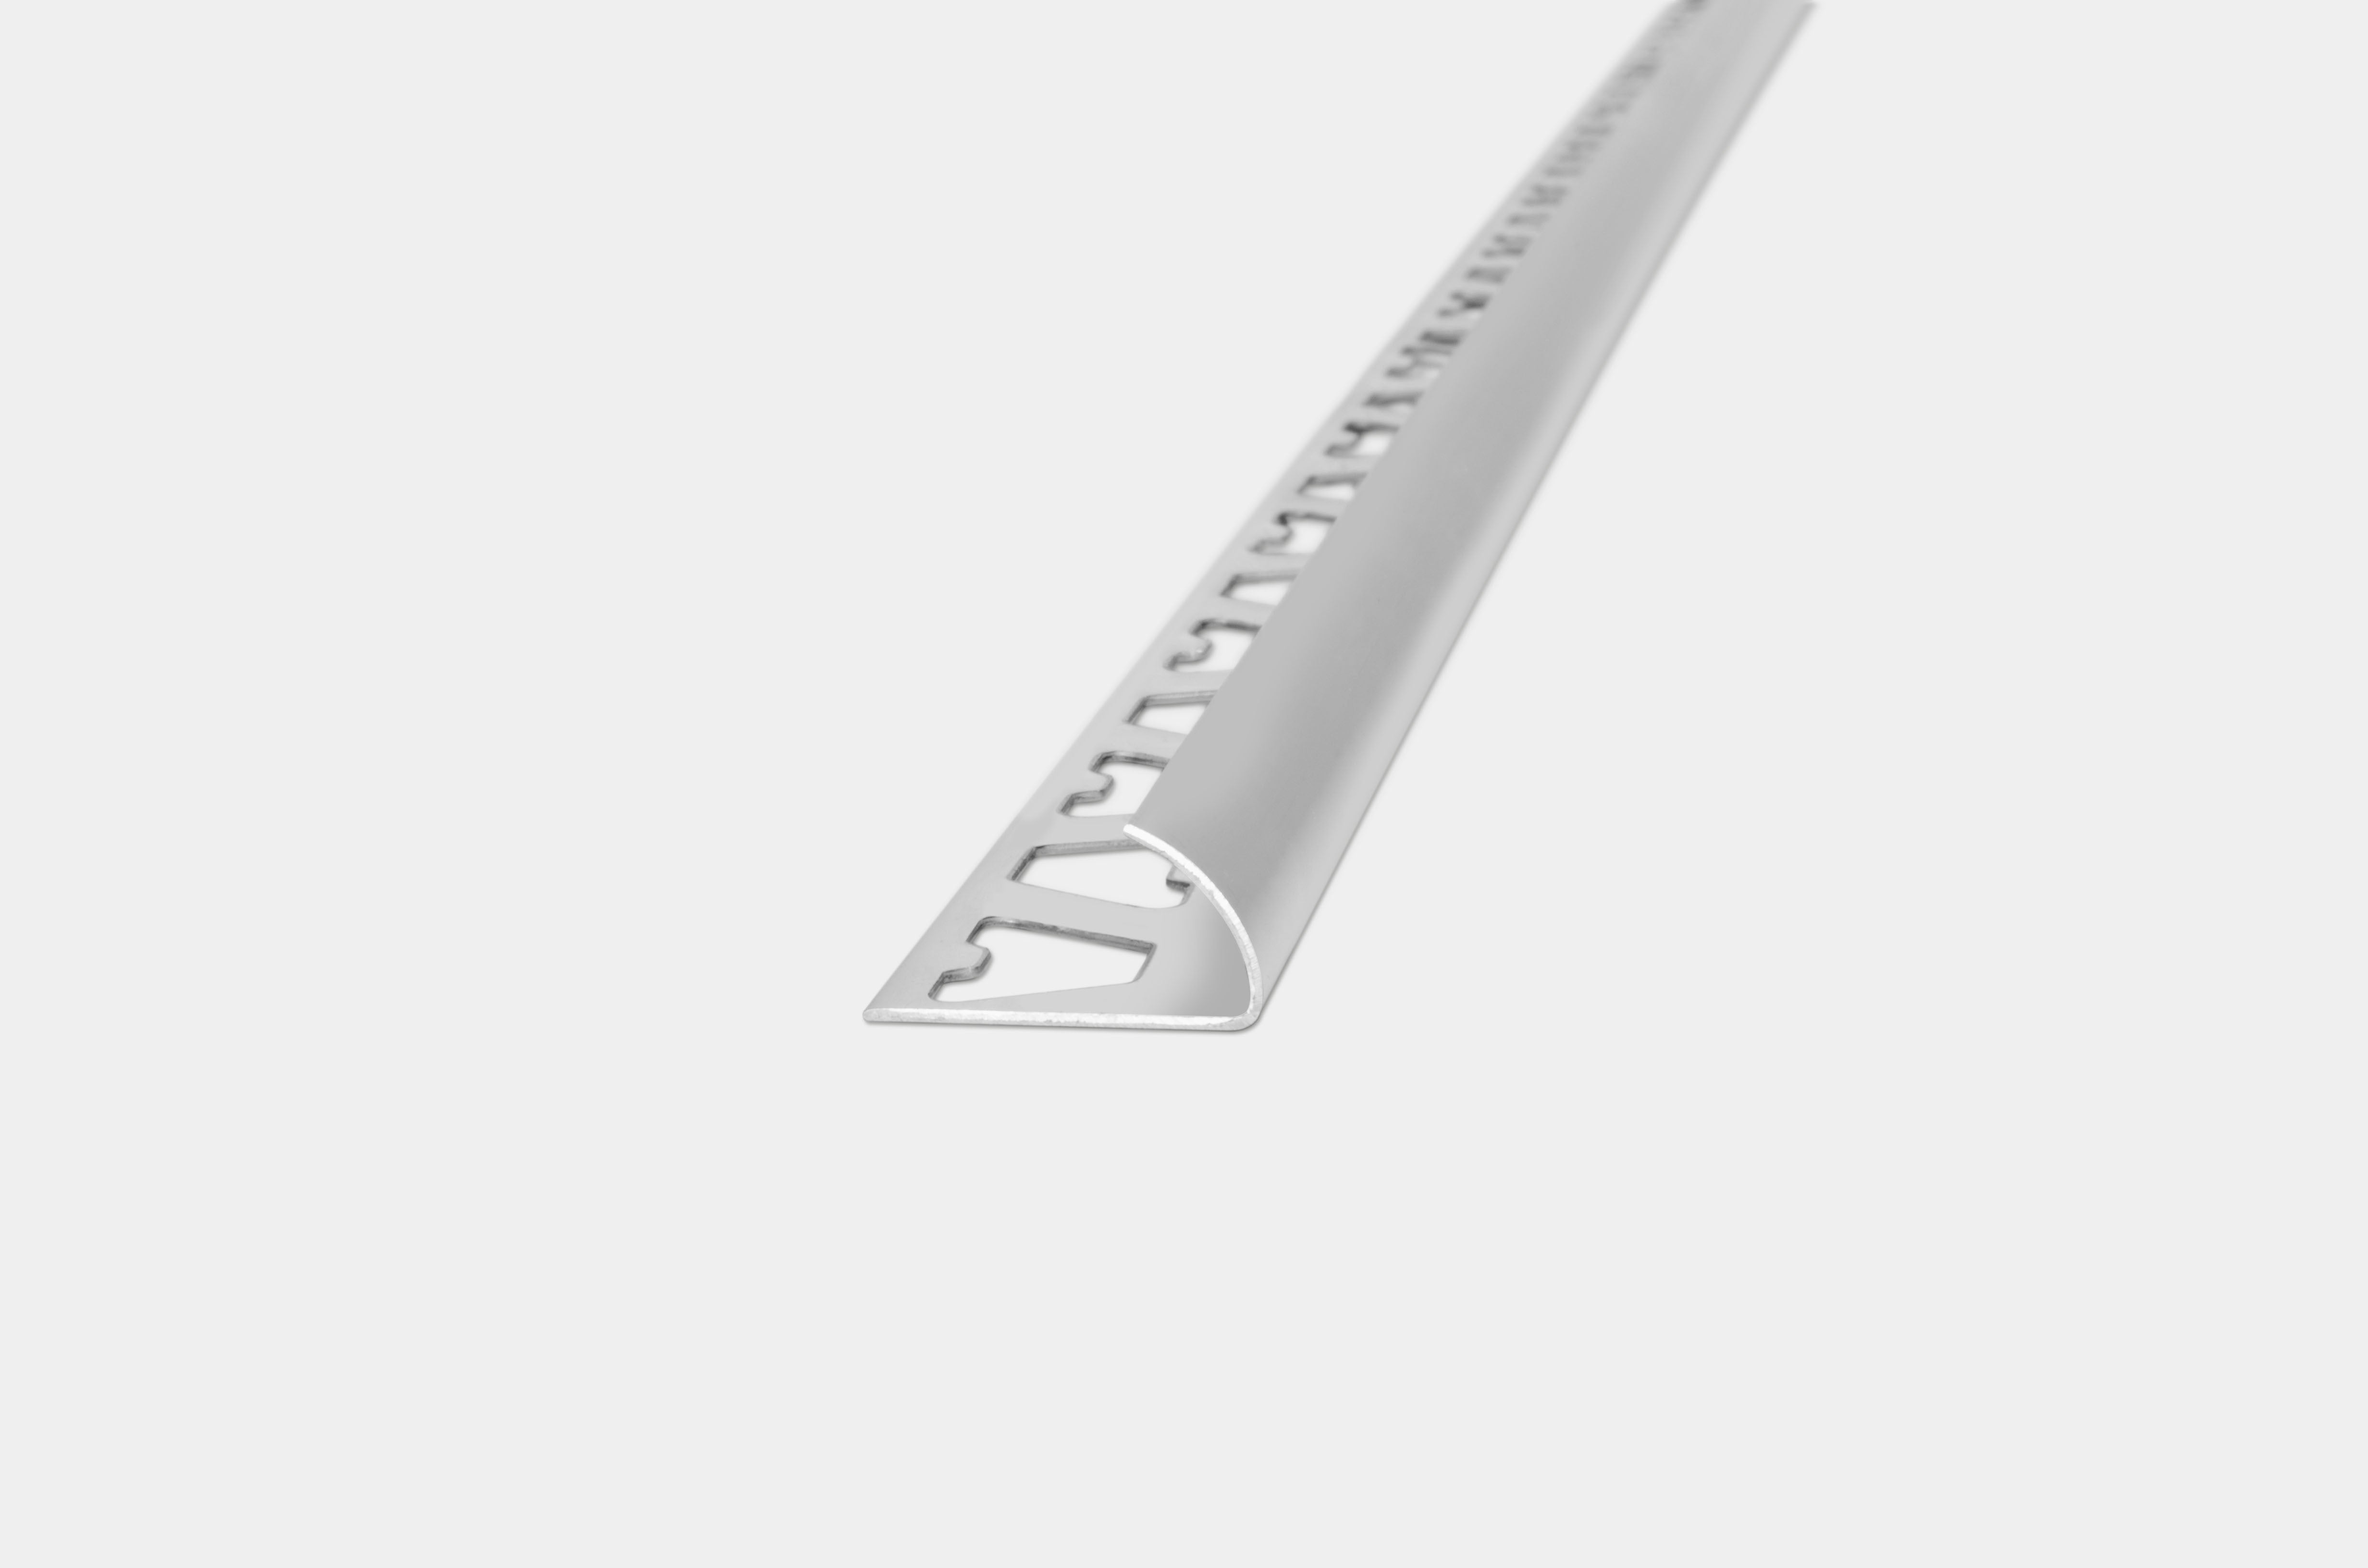 Aluminio guardacanto arco 10mm X 2,5m - Unidad.